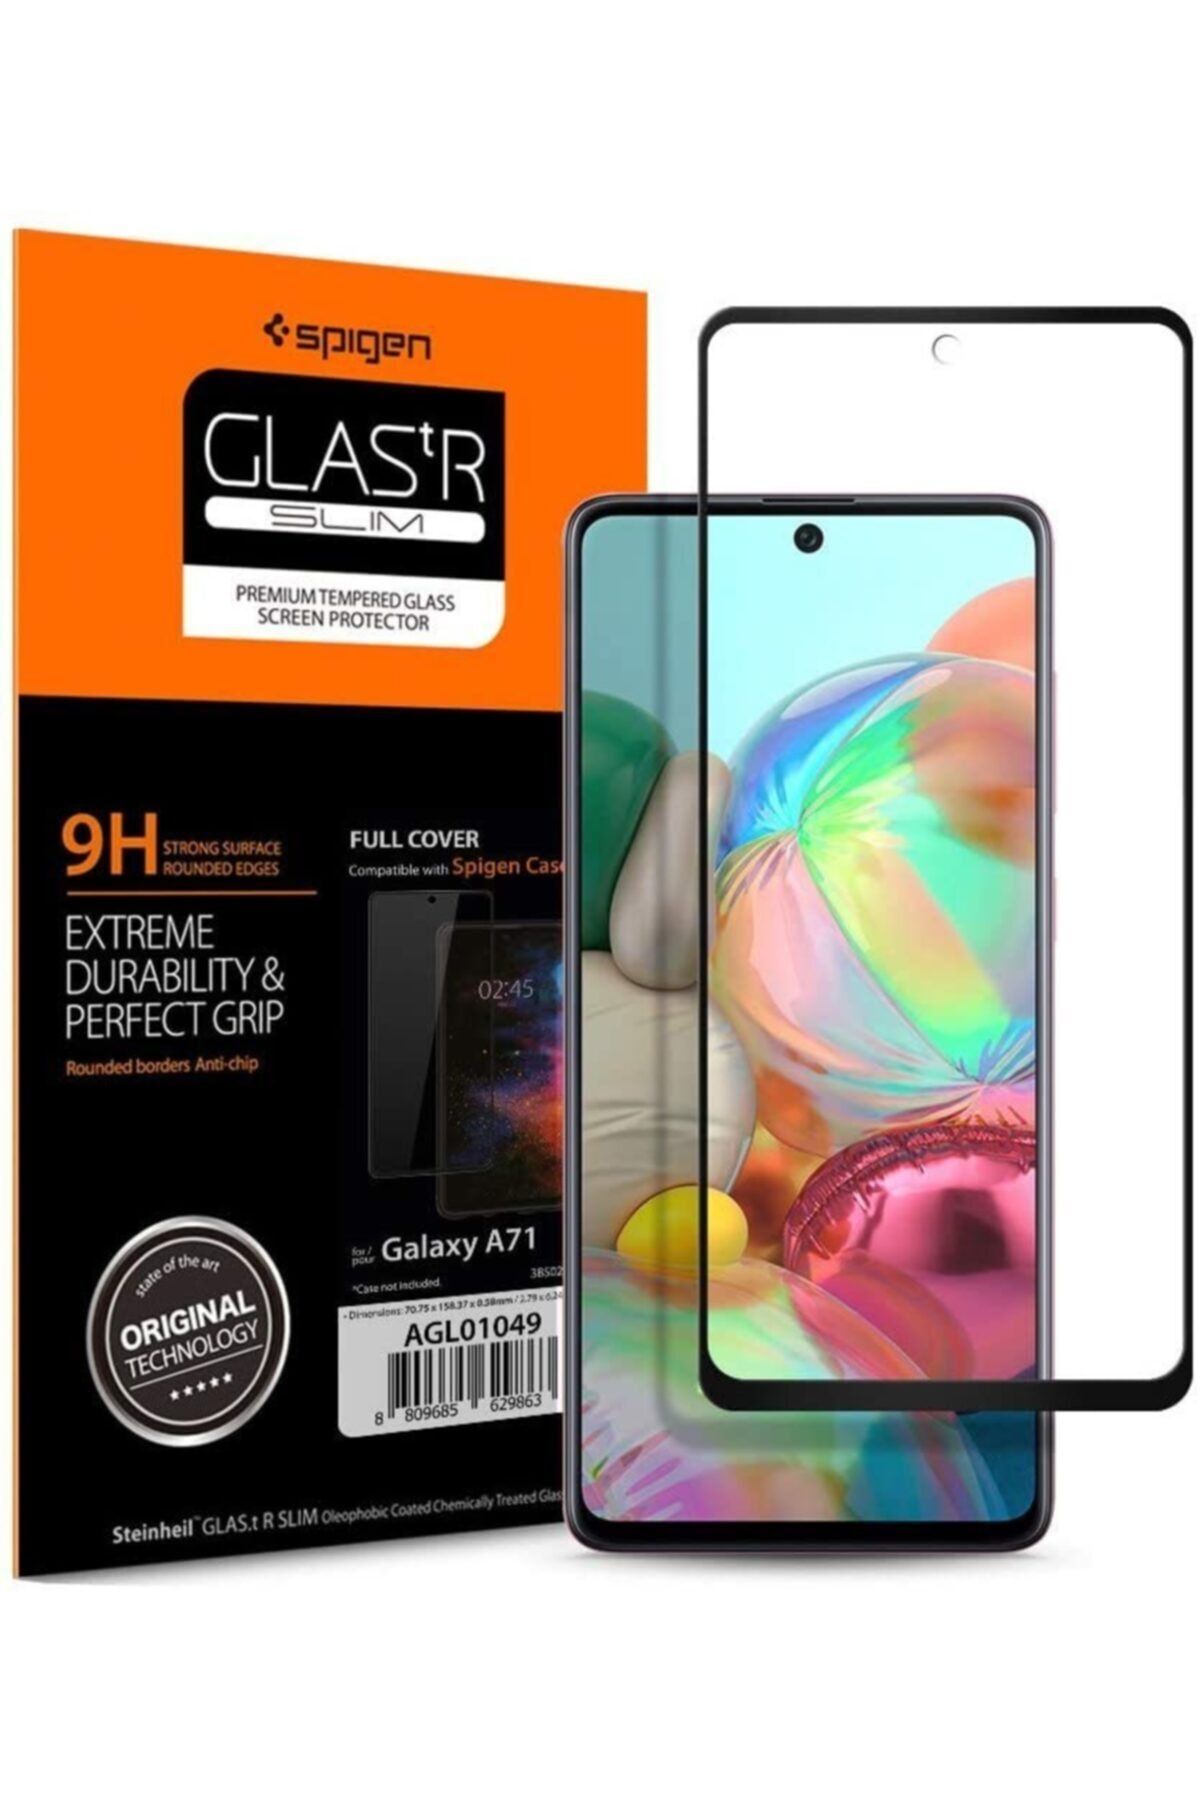 Spigen Samsung Galaxy A71 Cam Ekran Koruyucu Tam Kaplayan Glas.tr Slim Full Cover Black - Agl01049